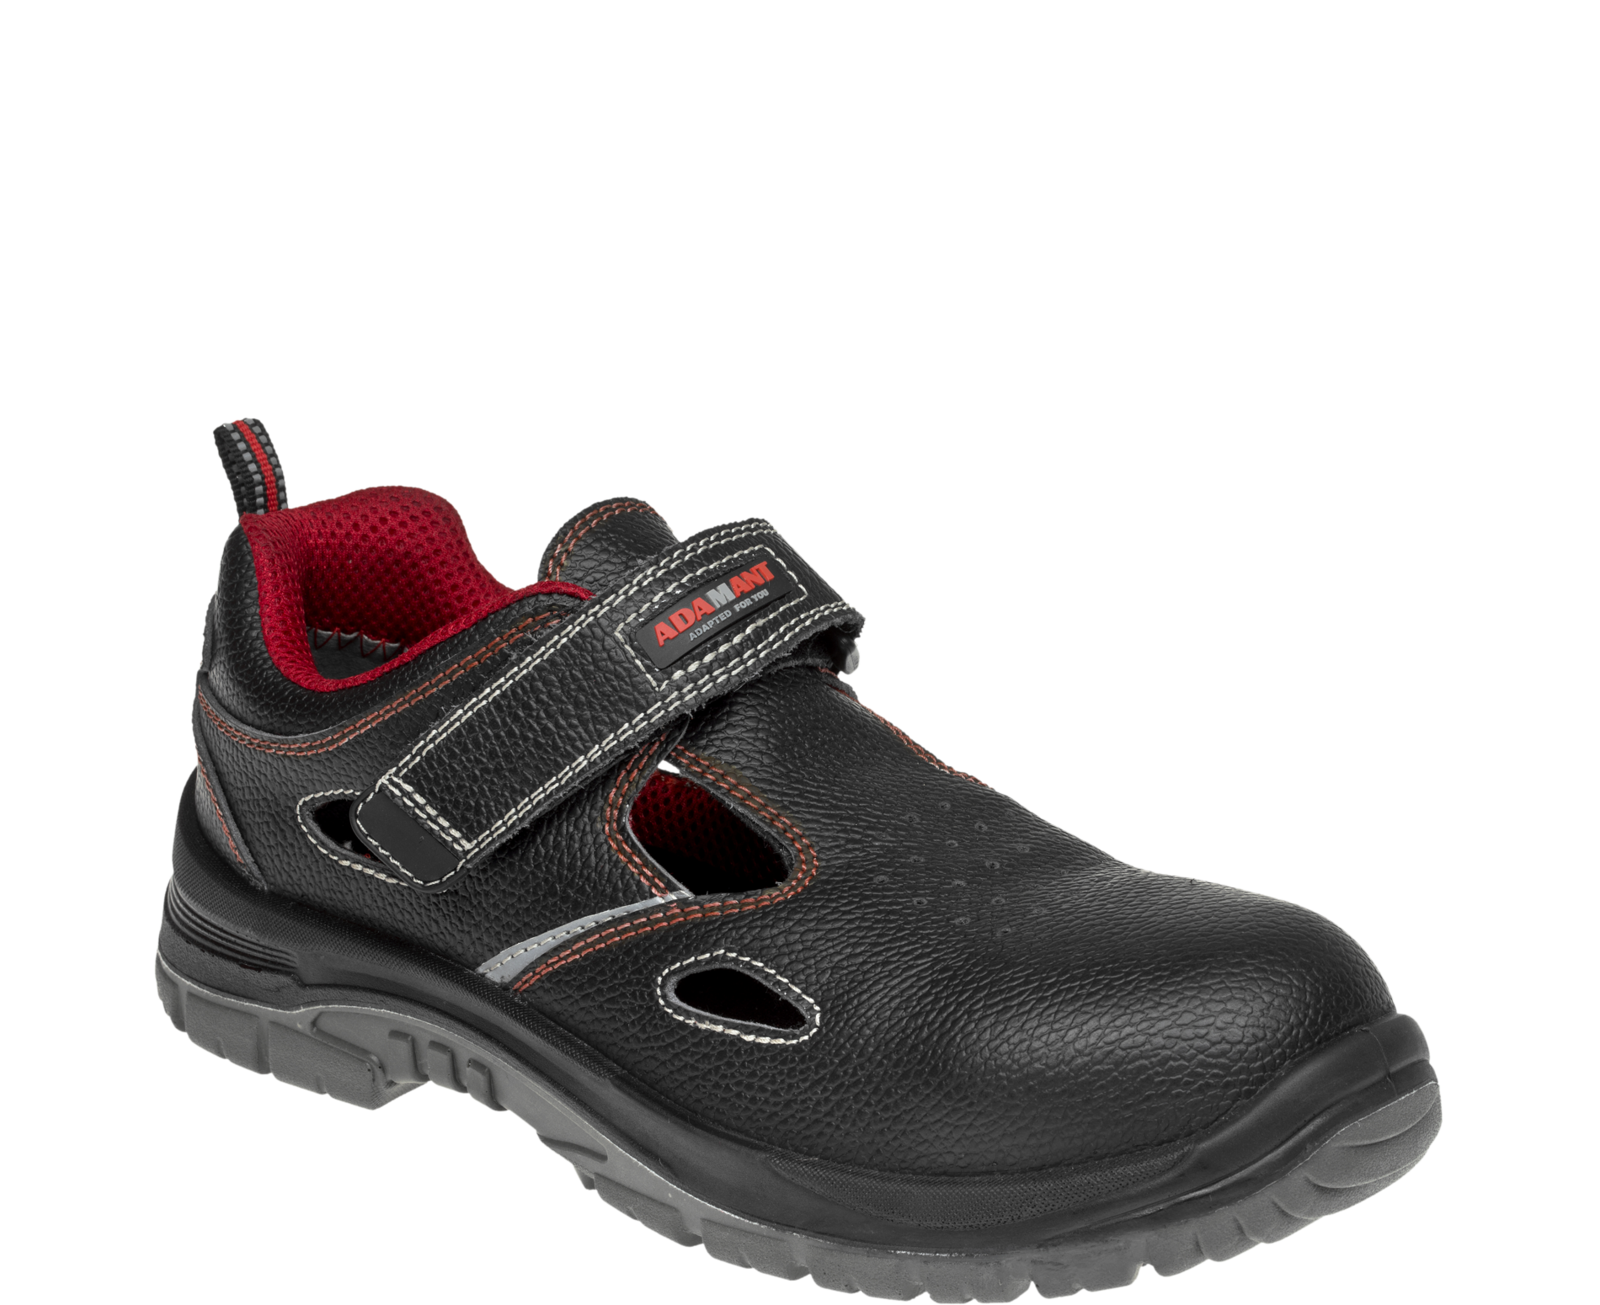 Bezpečnostné sandále Adamant Non Metallic S1 SRC - veľkosť: 50, farba: čierna/červená